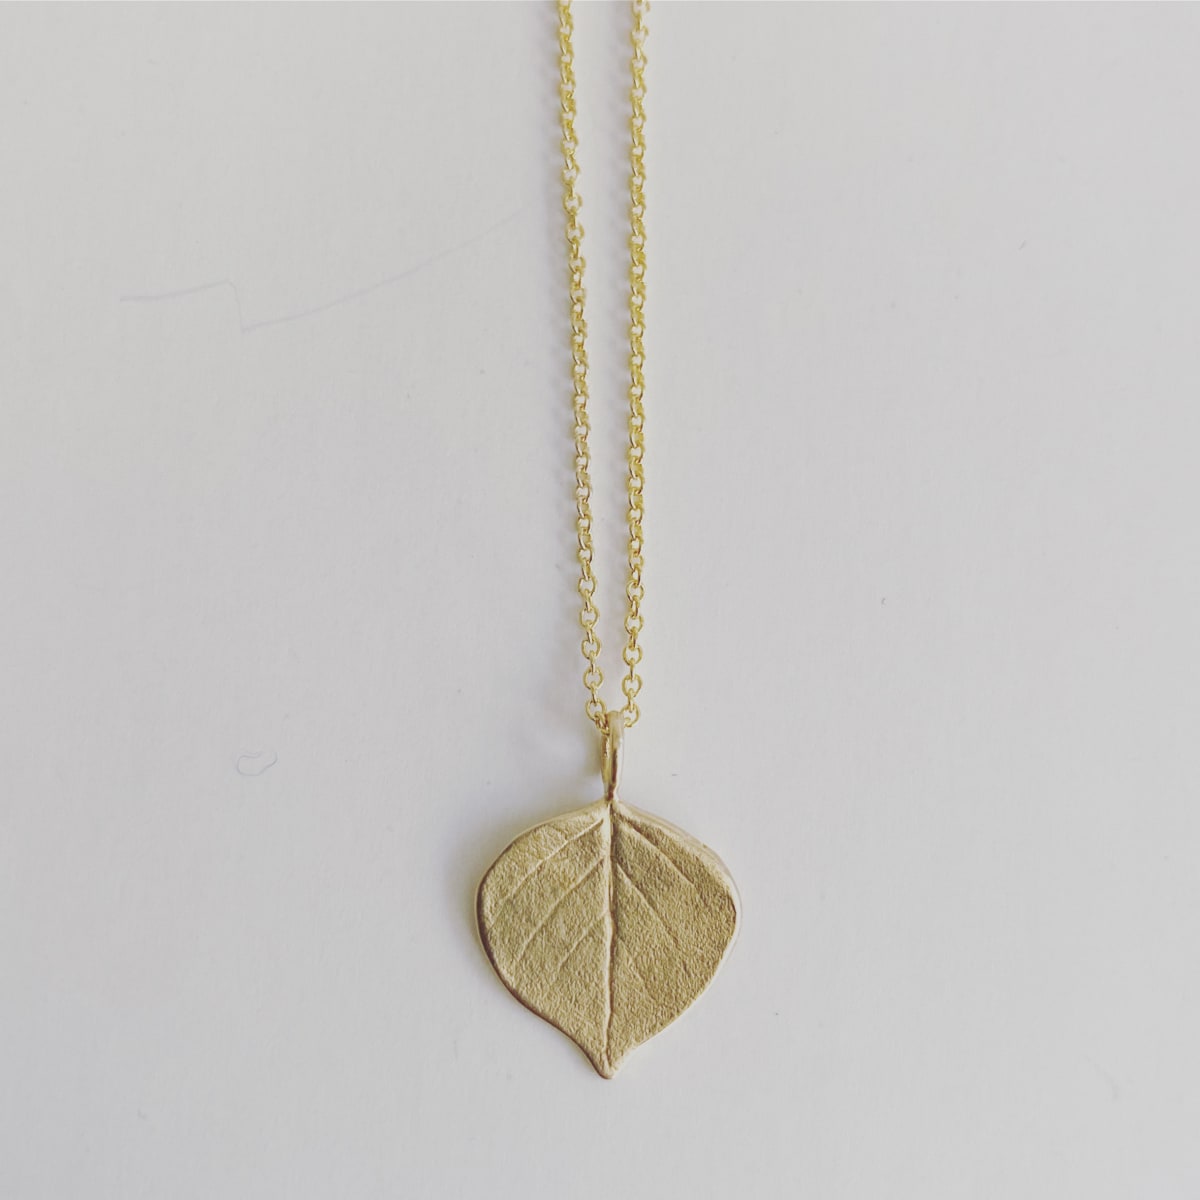 Brass Aspen Leaf Necklace by Caitlin Dunn 